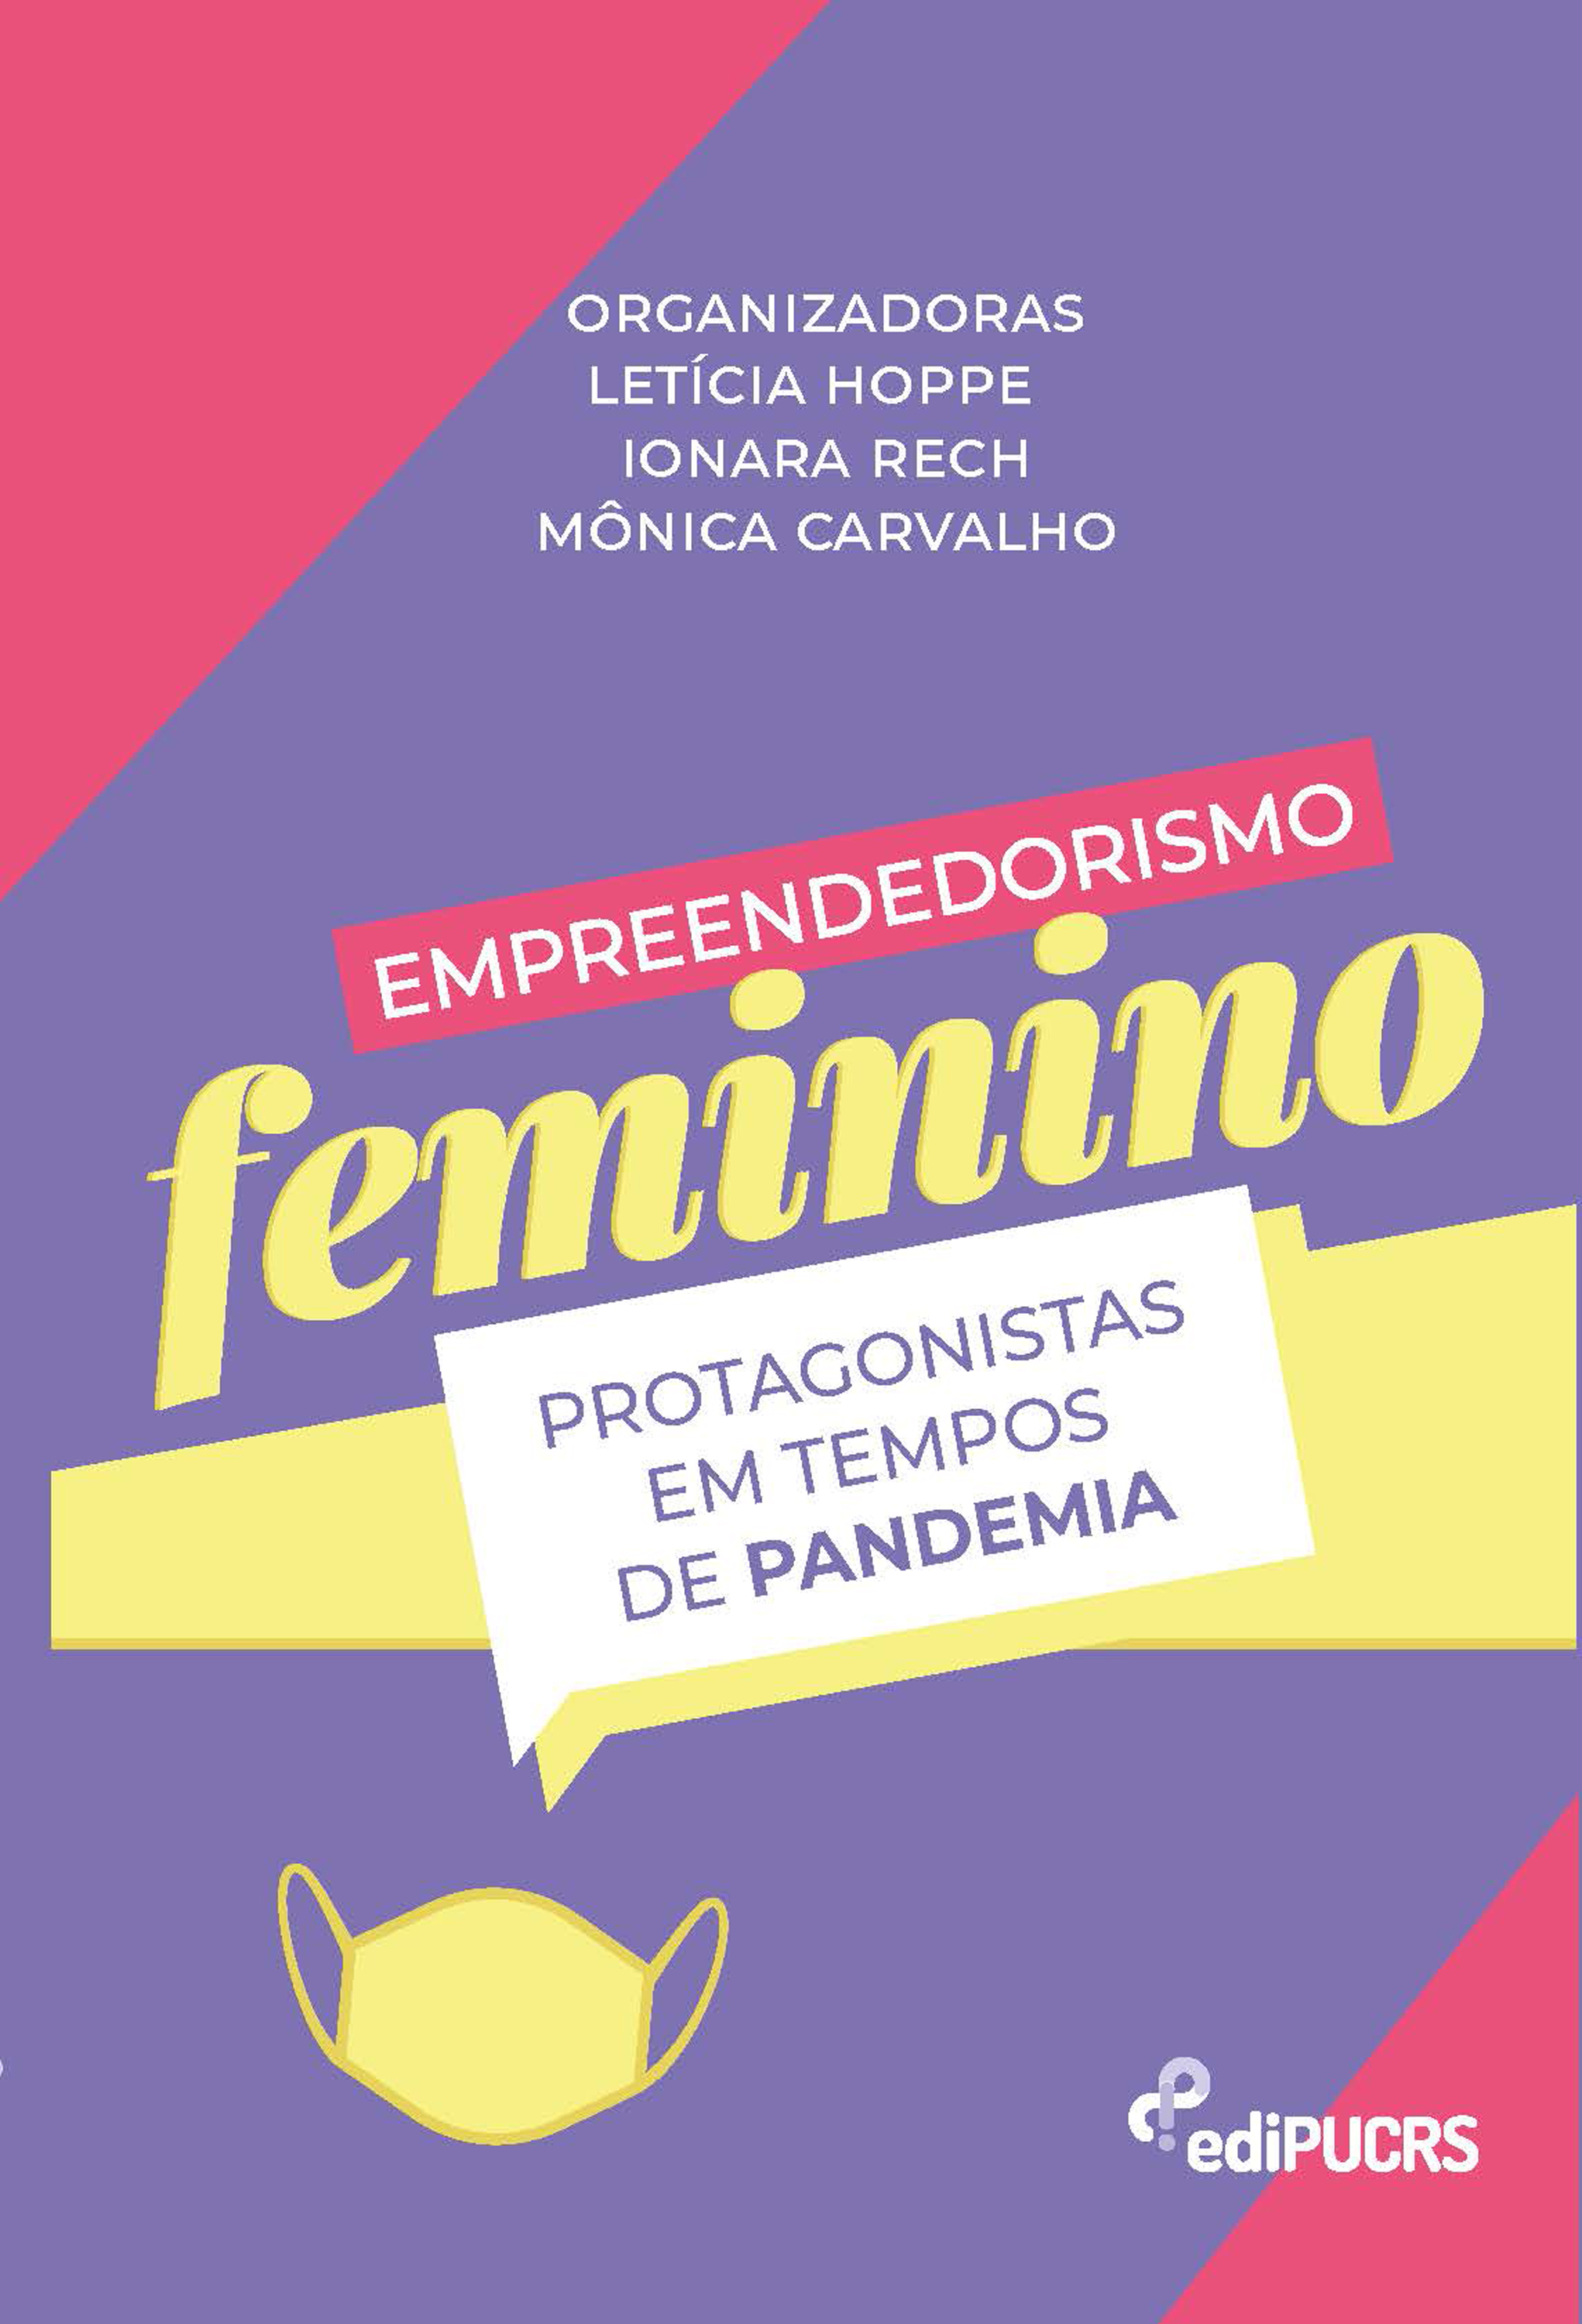 Empreendedorismo feminino: protagonistas em tempos de pandemia